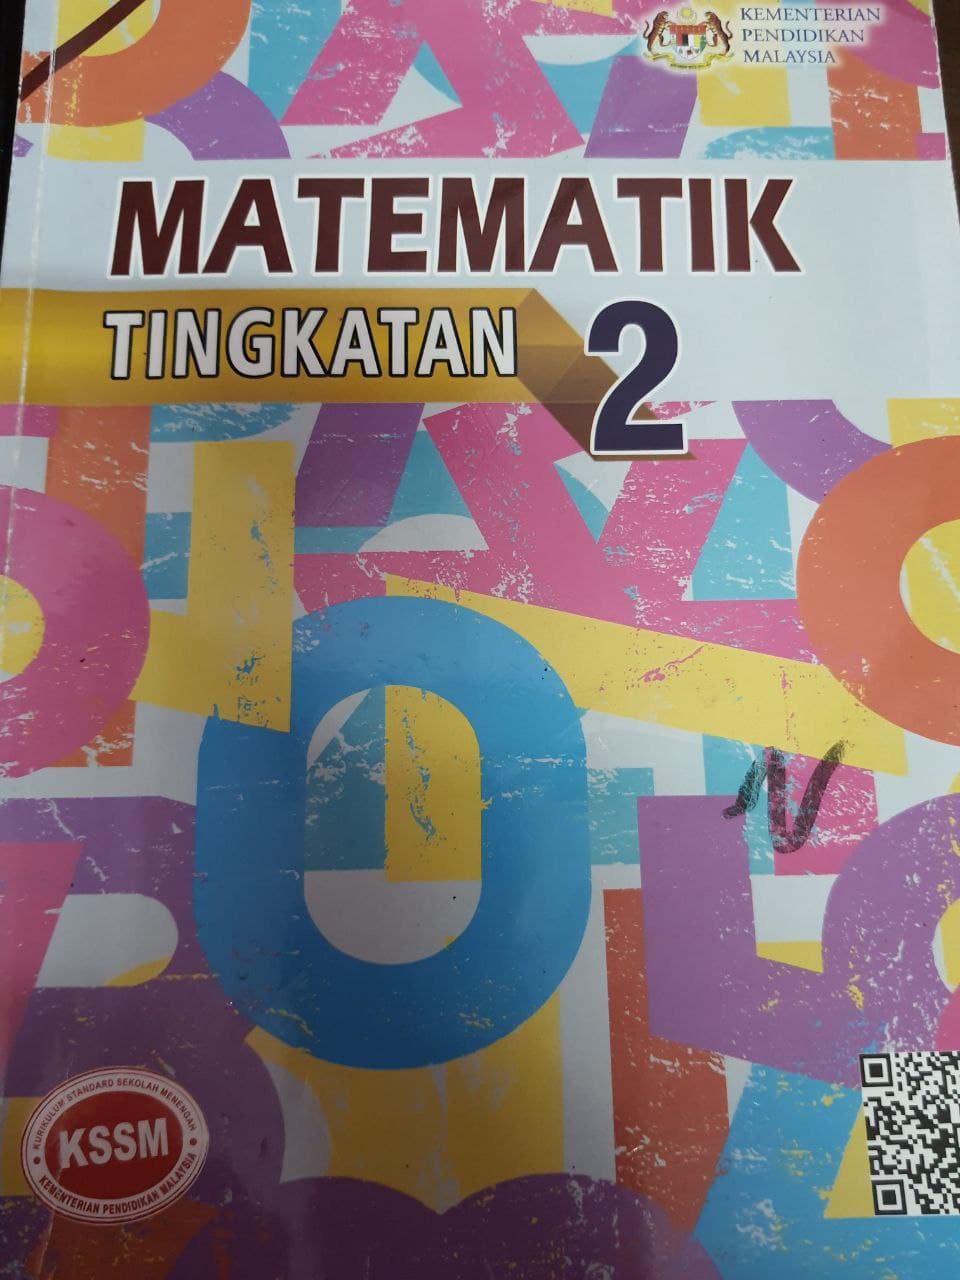 Kuiz Matematik Ting 2 Bab 12 Mathematics Quizizz